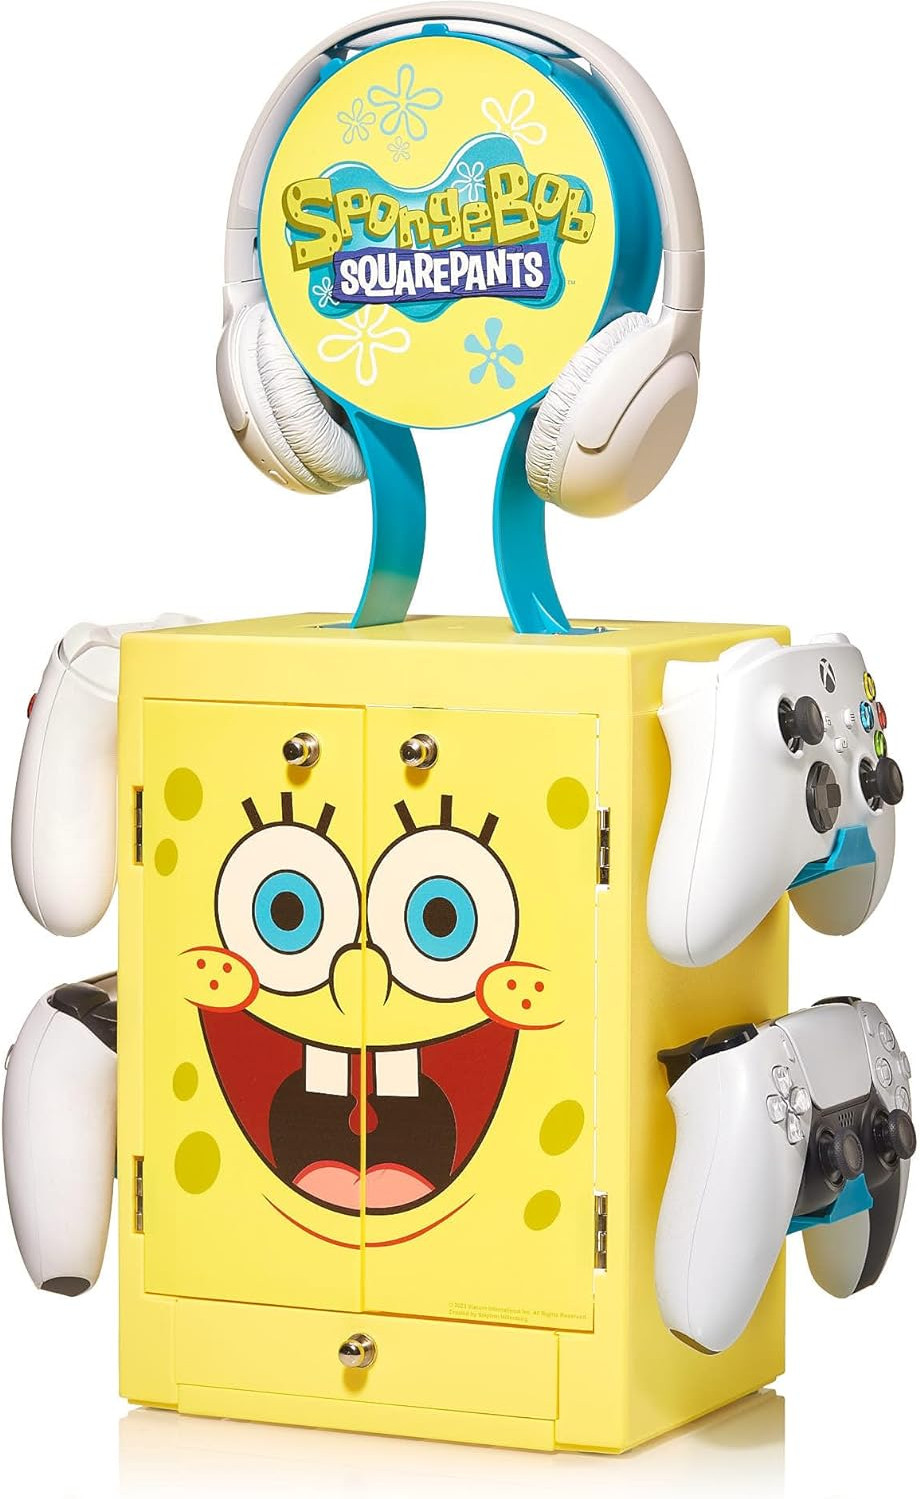 Numskull Gaming Locker - Spongebob